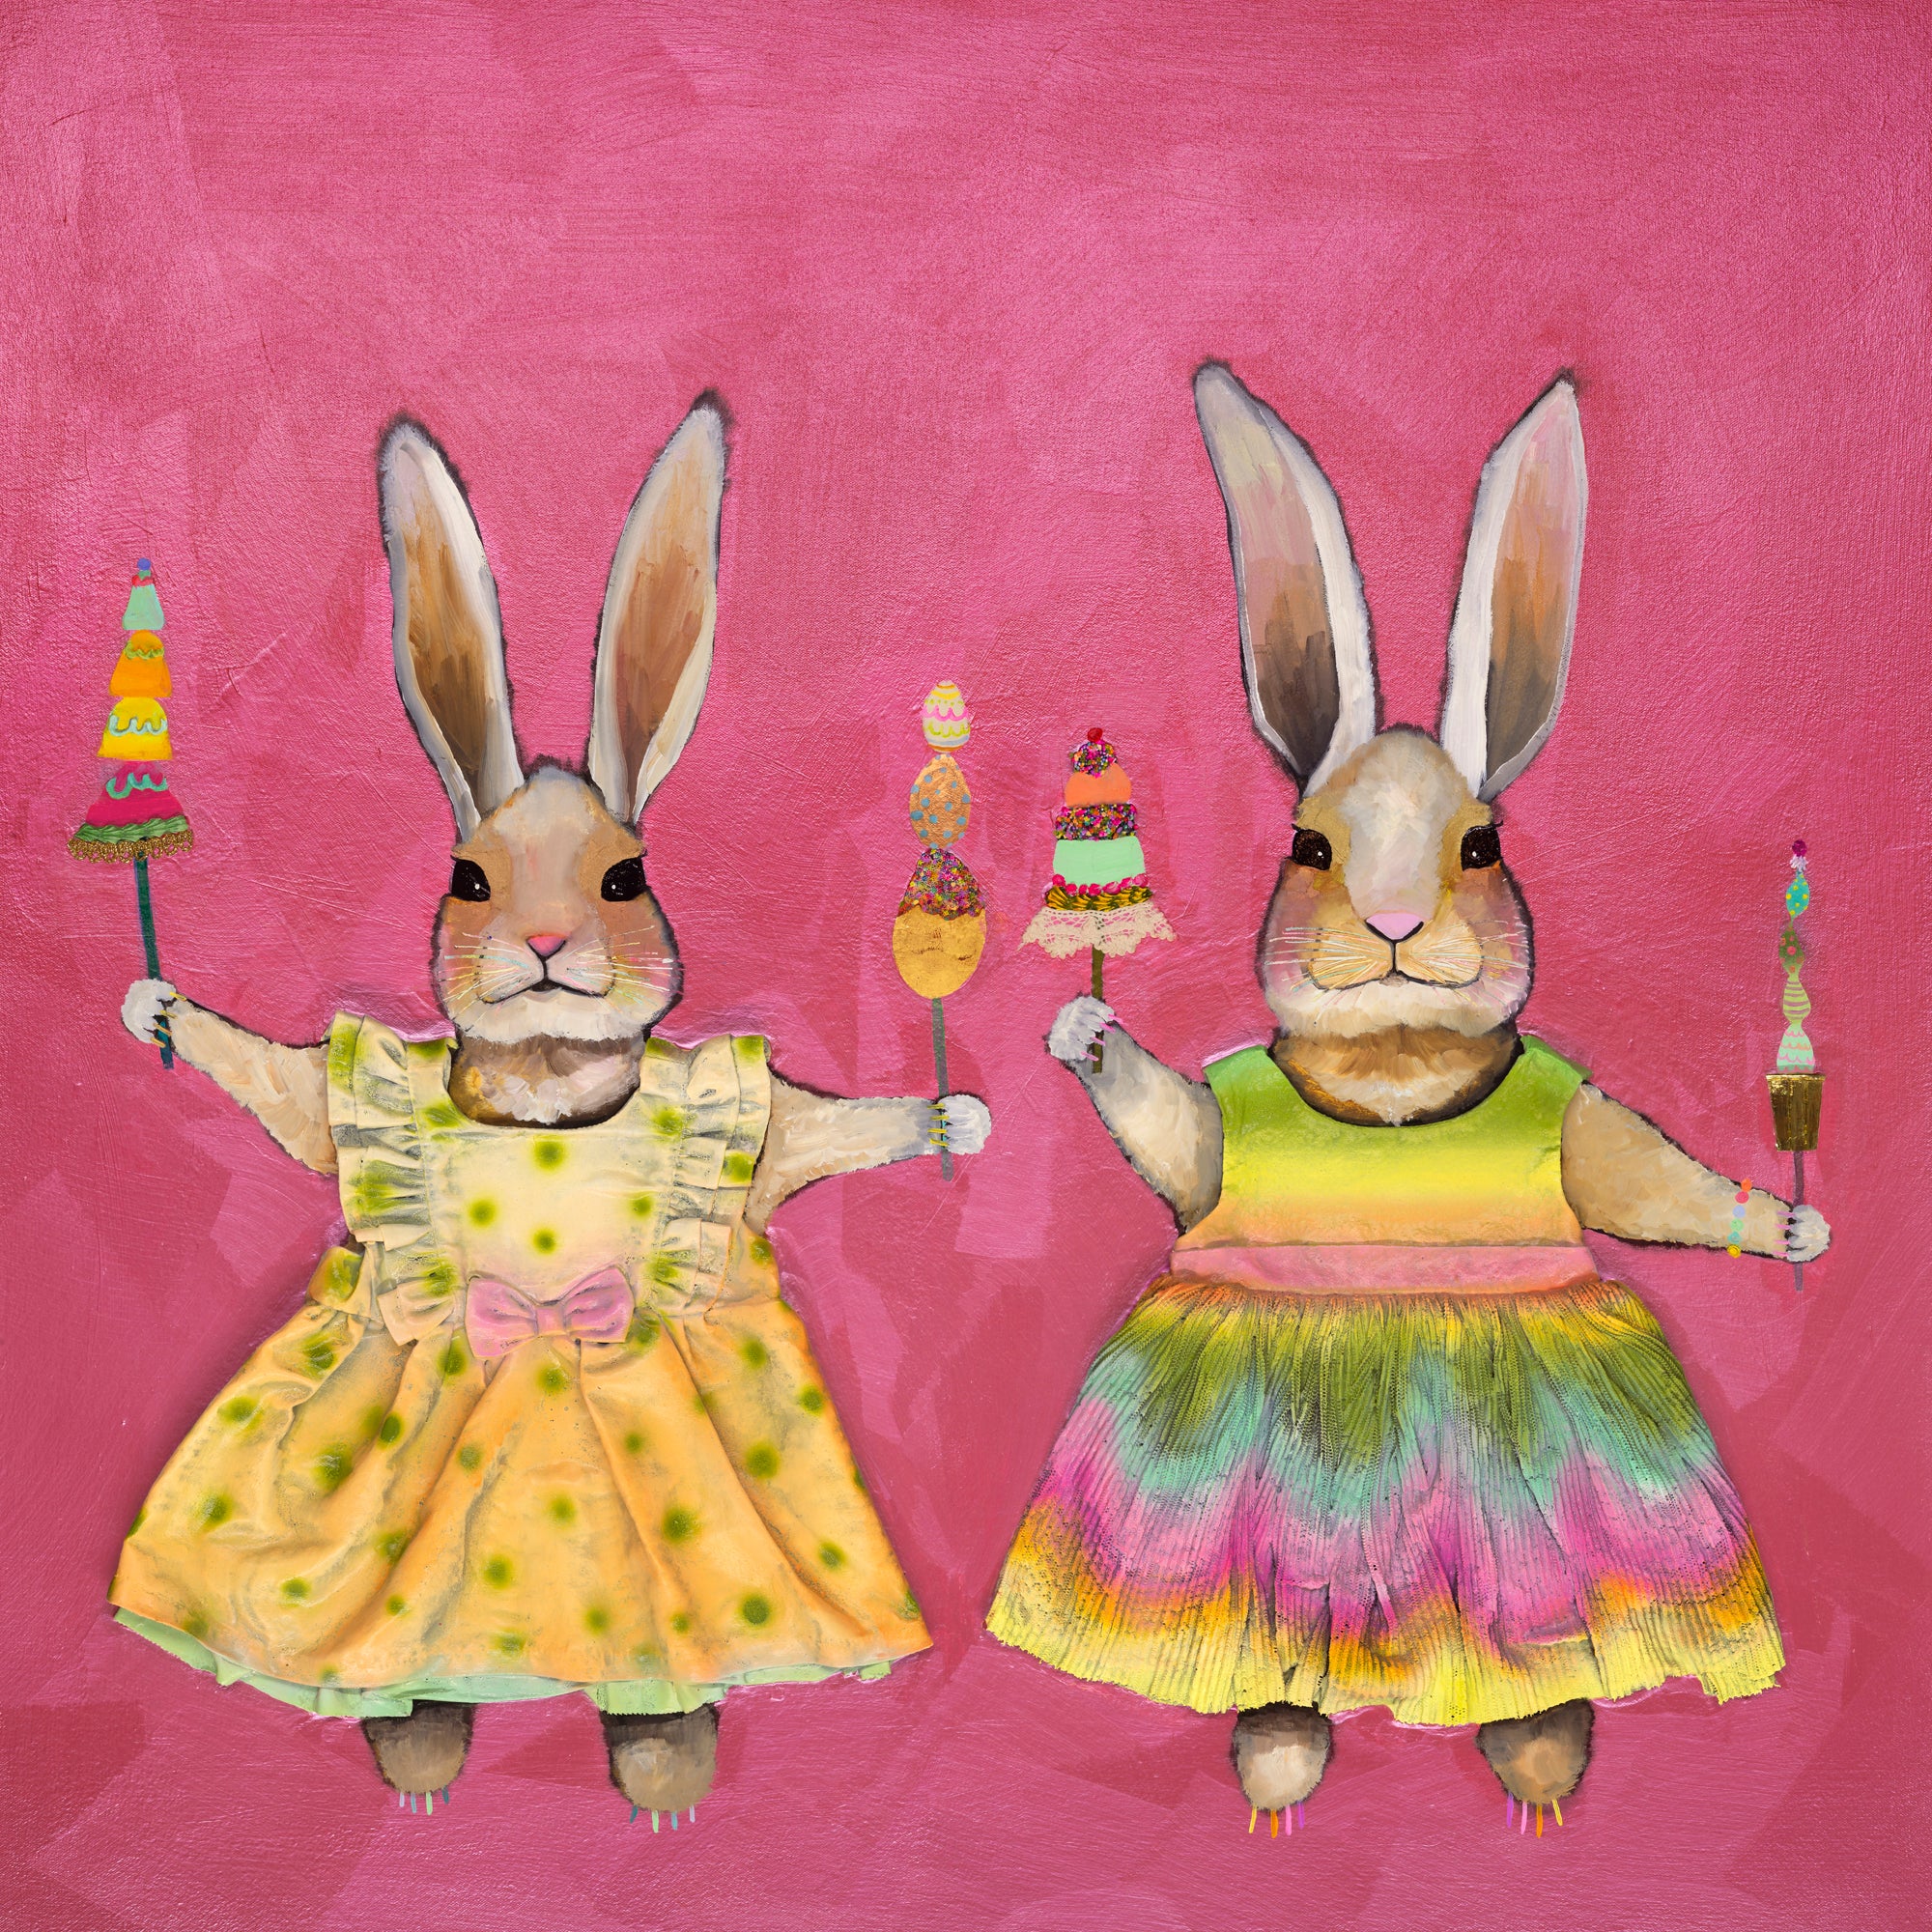 Summer Bunny Treats - Canvas Giclée Print